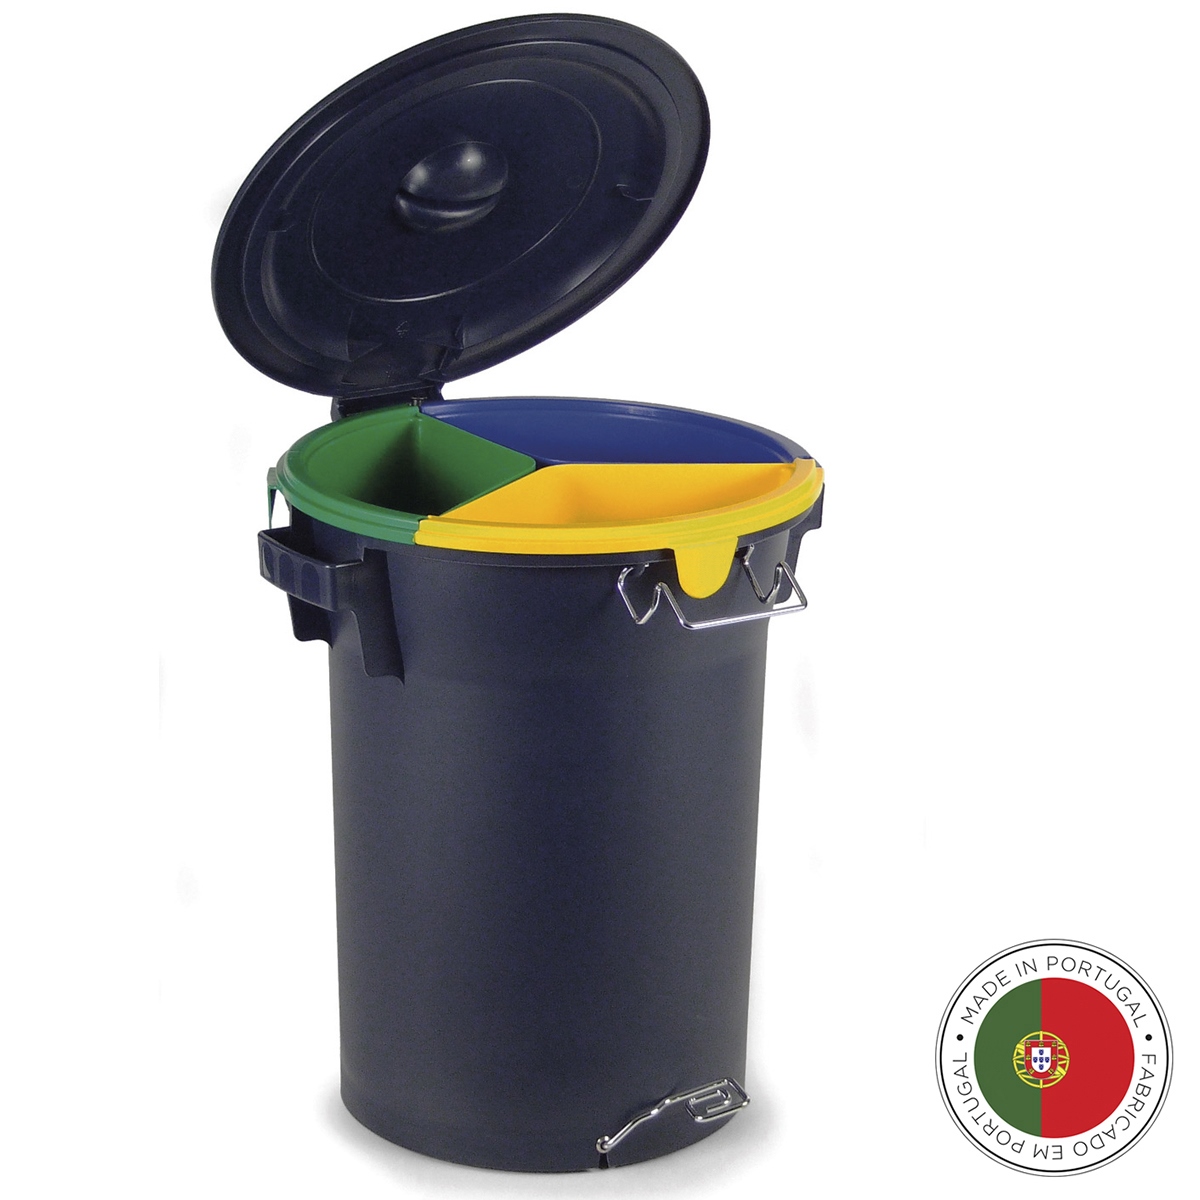 Бак с педалью для раздельного сбора мусора ECO navy, 60 см, 50 см, 52 л, Пластик, Металл, Faplana, Португалия